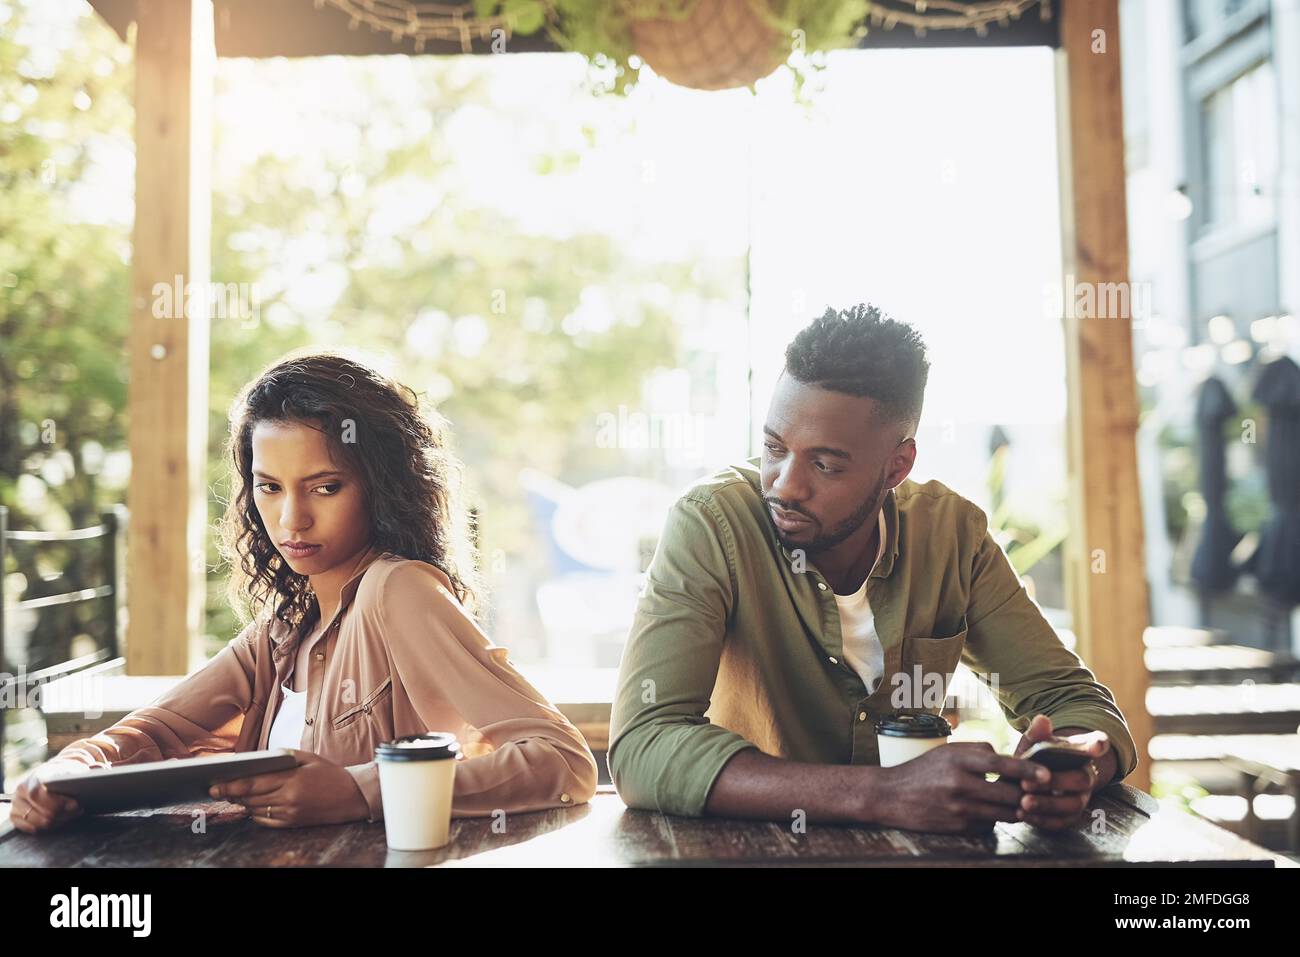 Soziale Medien können gut oder schlecht für Ihre Beziehung sein. Zwei junge Menschen, die ihre Wireless-Geräte in einem Café verwenden. Stockfoto